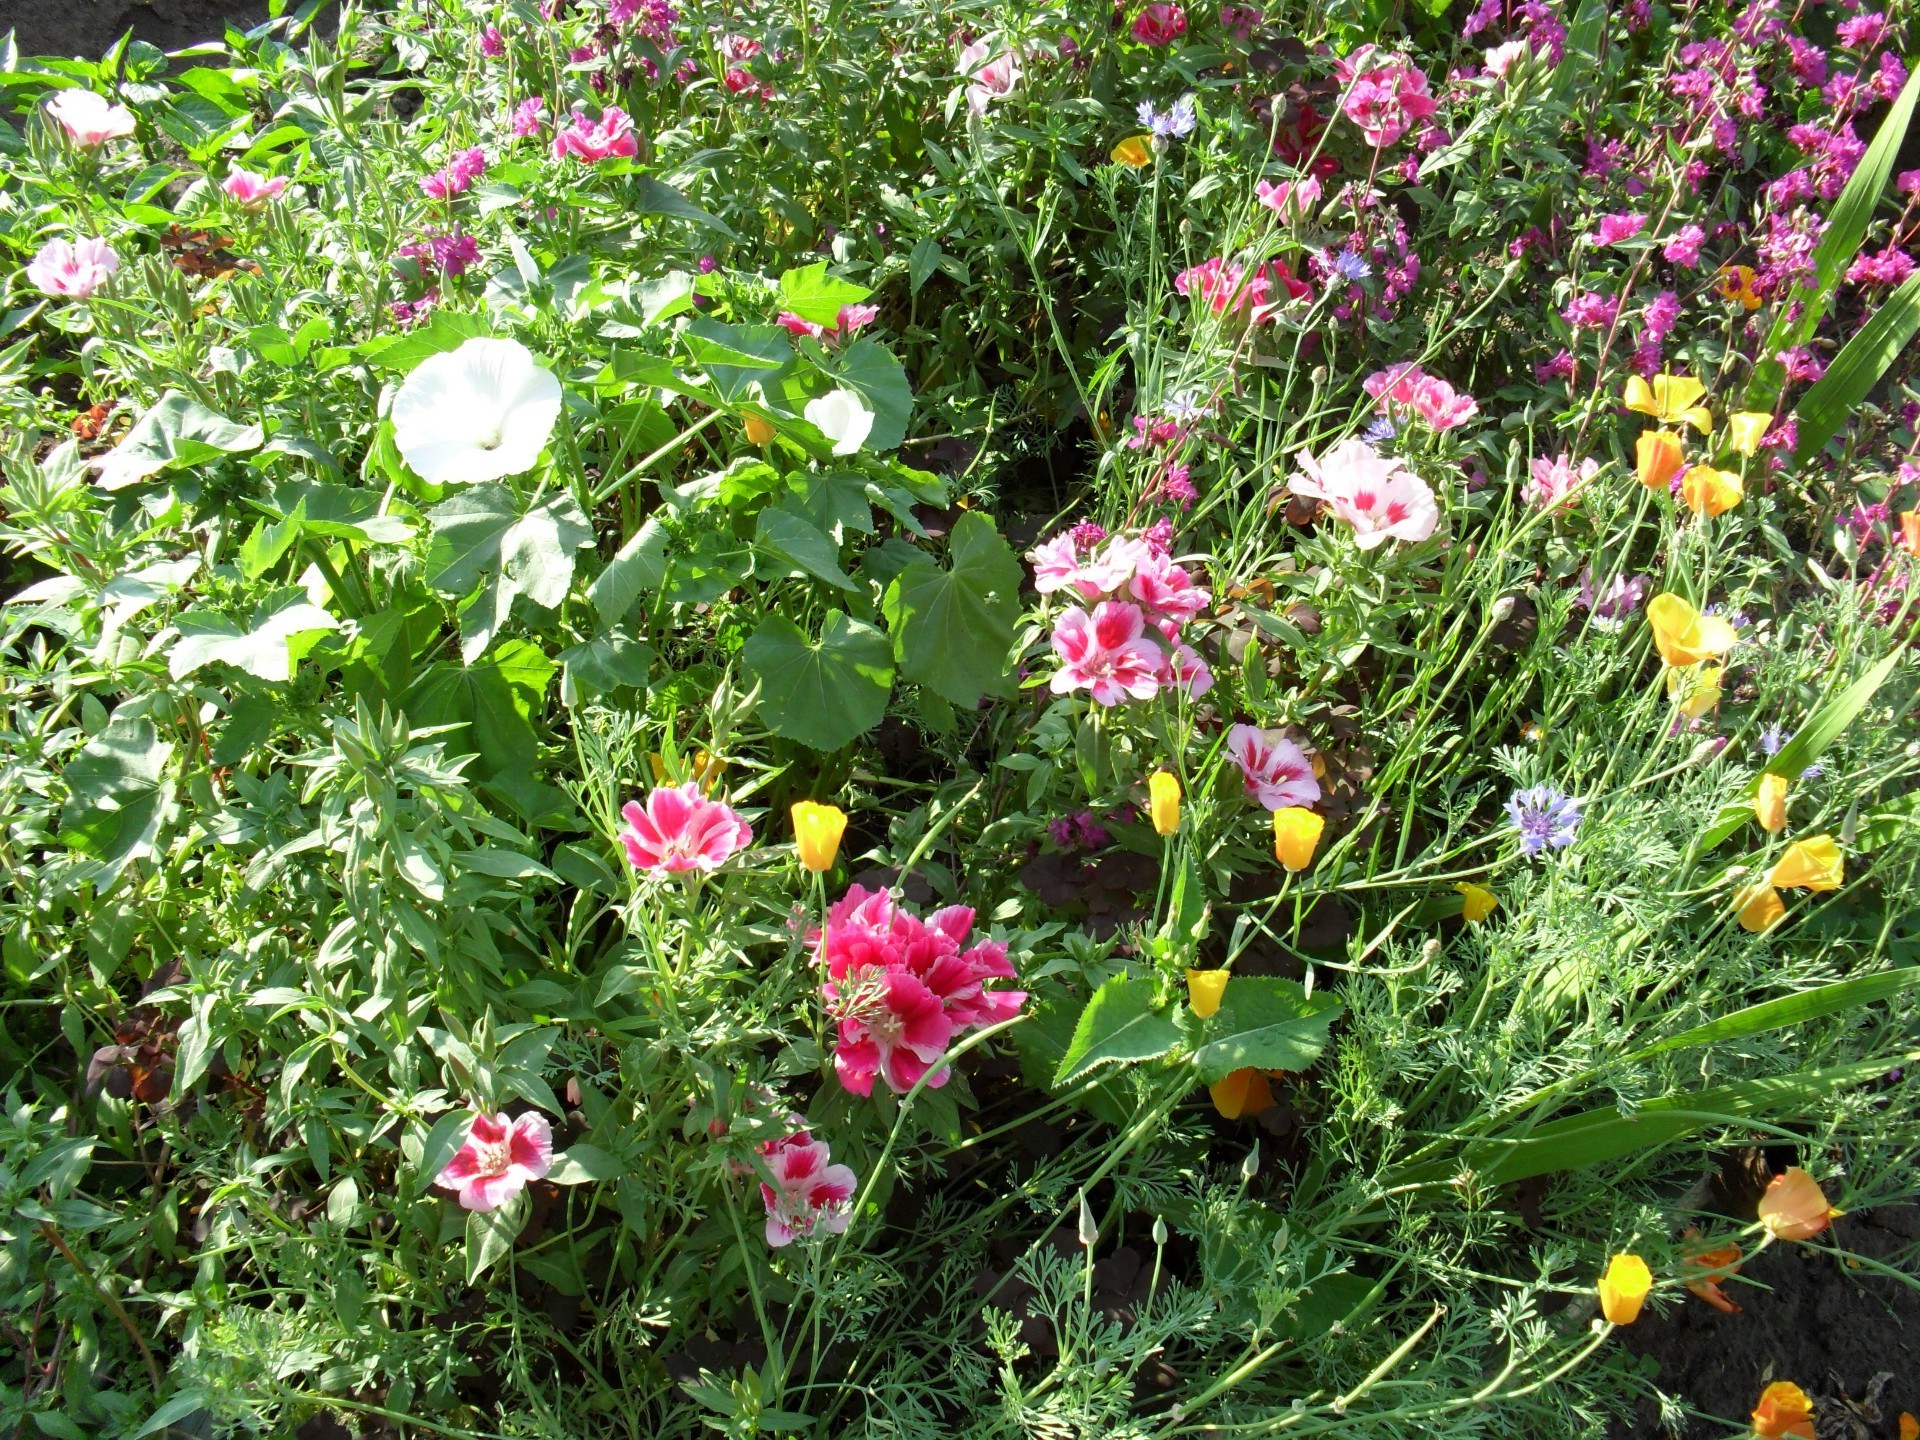 цветы цветок флора сад природа блюминг лето цветочные лепесток лист поле трава сенокос сезон цвет рост яркий хорошую погоду газон дружище на открытом воздухе